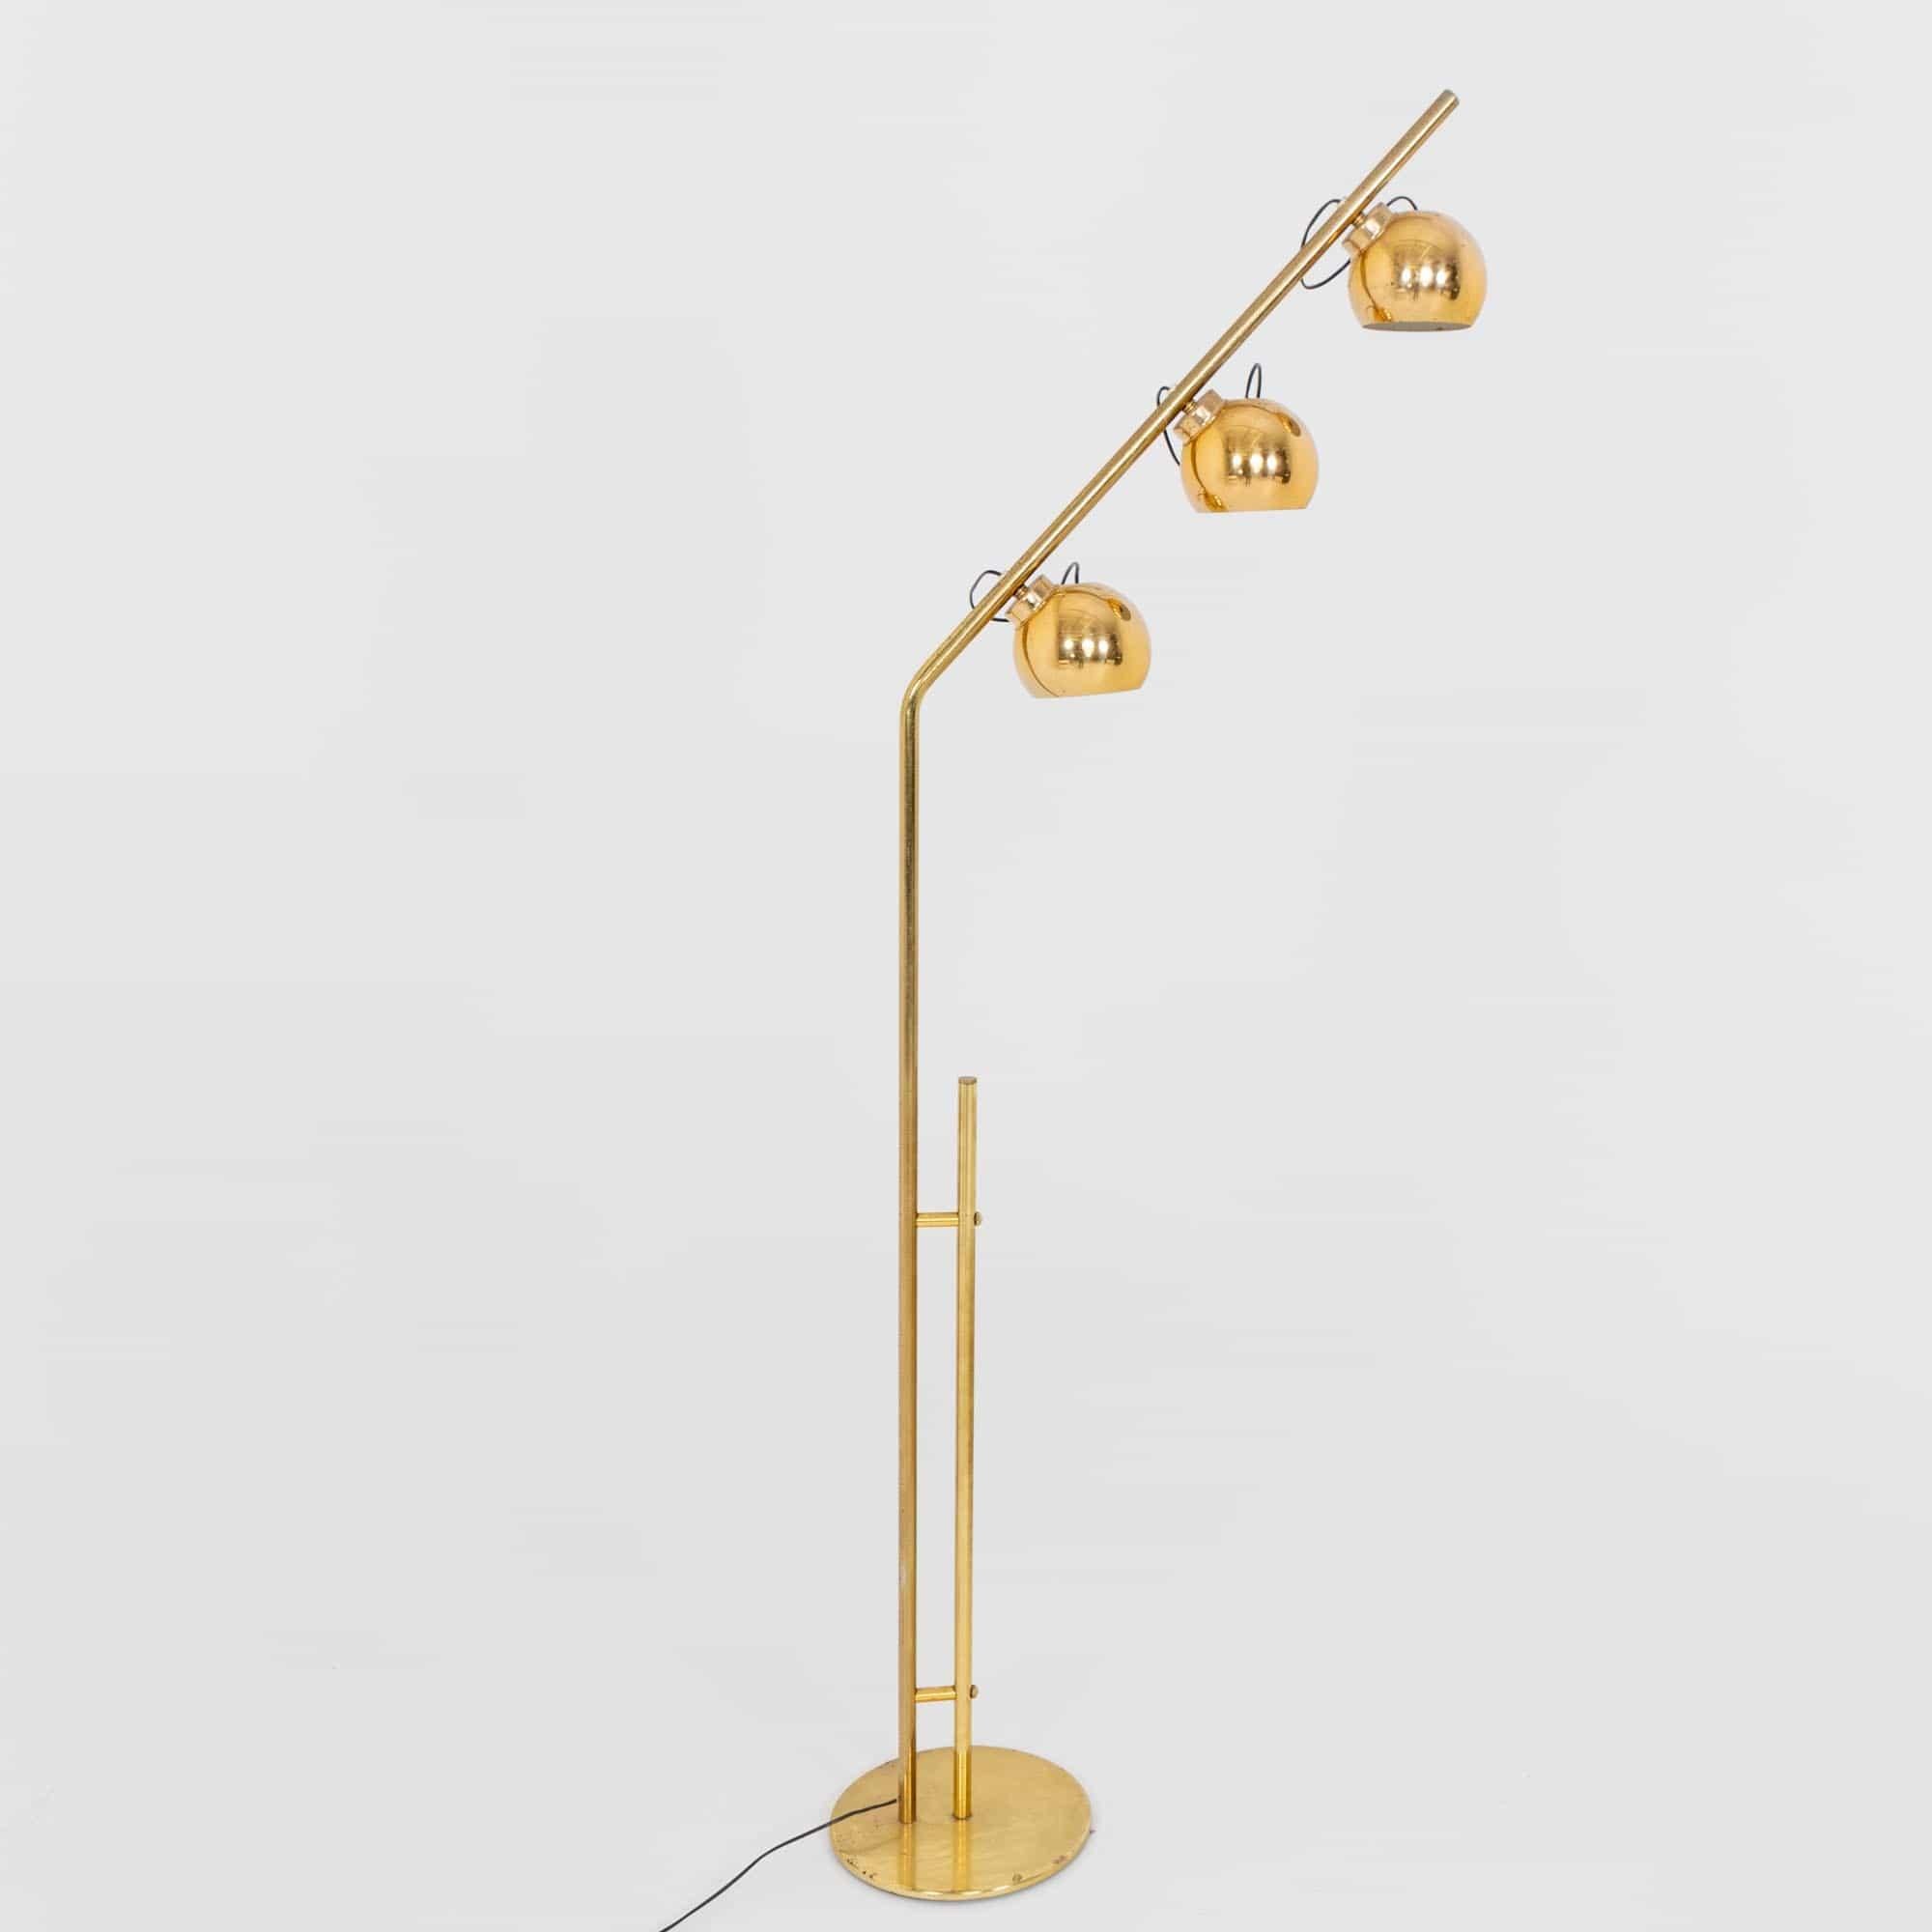 Italian Brass Floor Lamp with three Light Bulbs, Italy 1970s For Sale